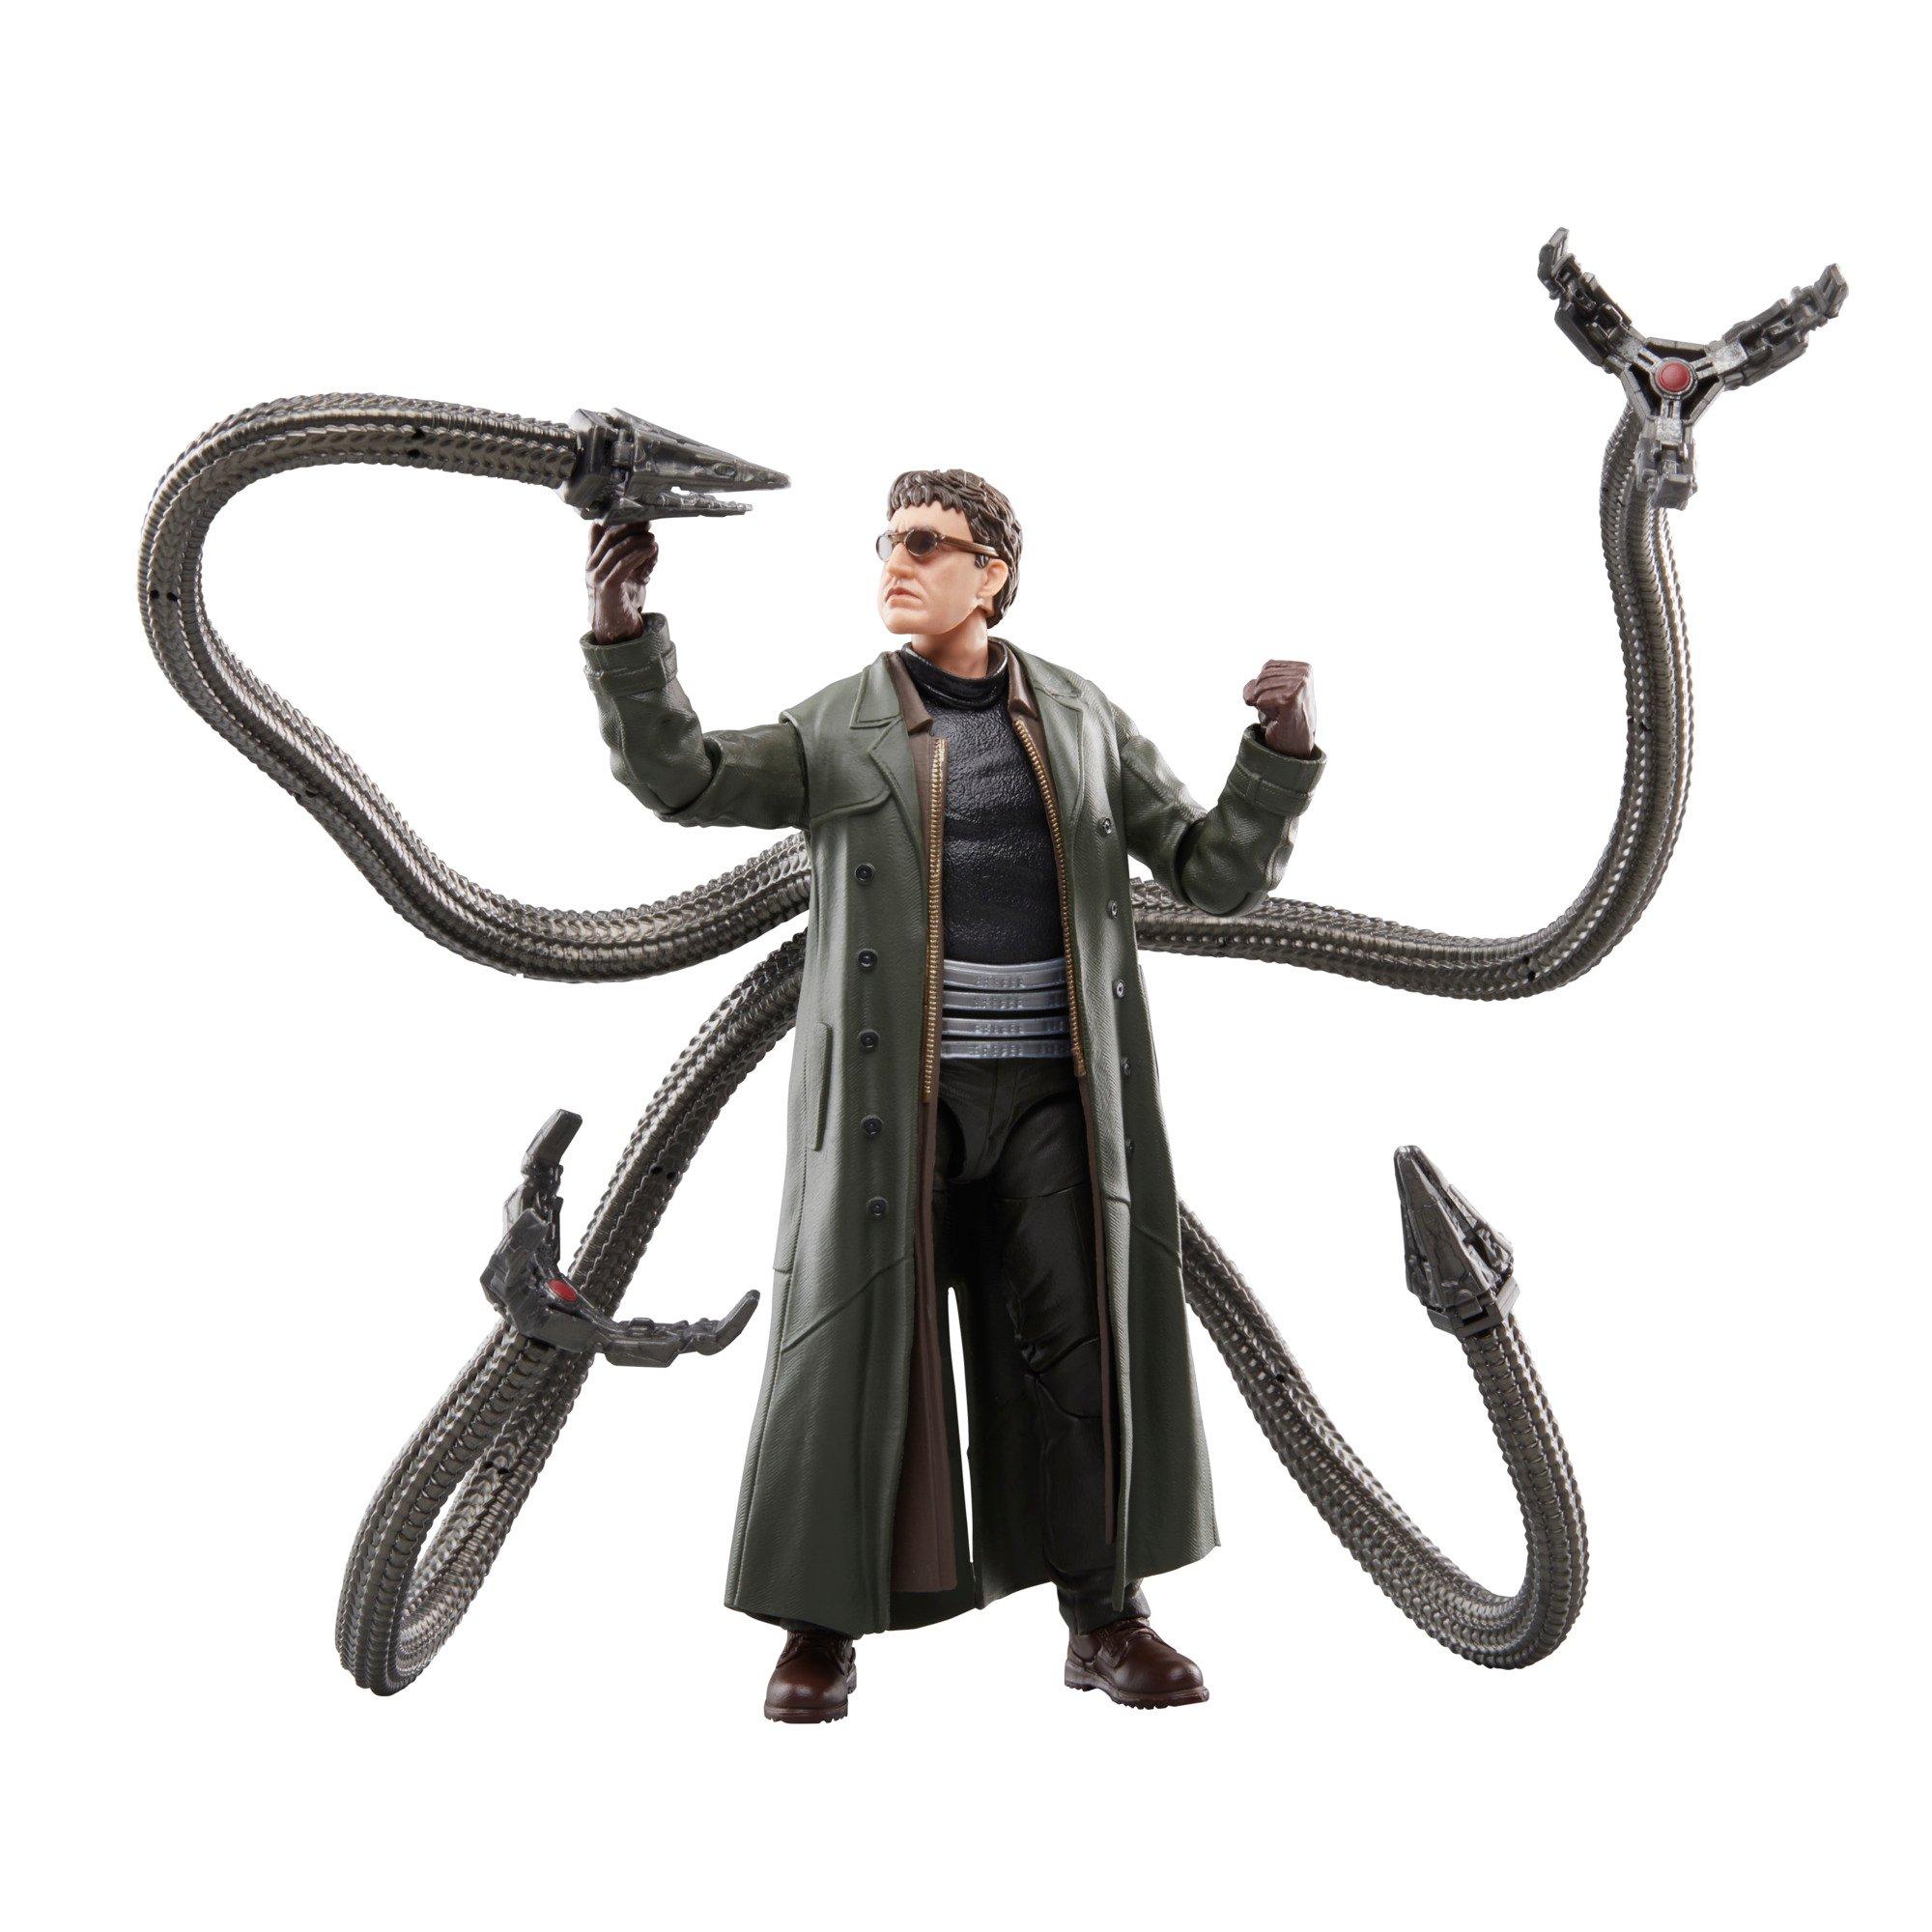 Doctor Octopus (No Way Home) (Marvel Legends) Custom Action Figure